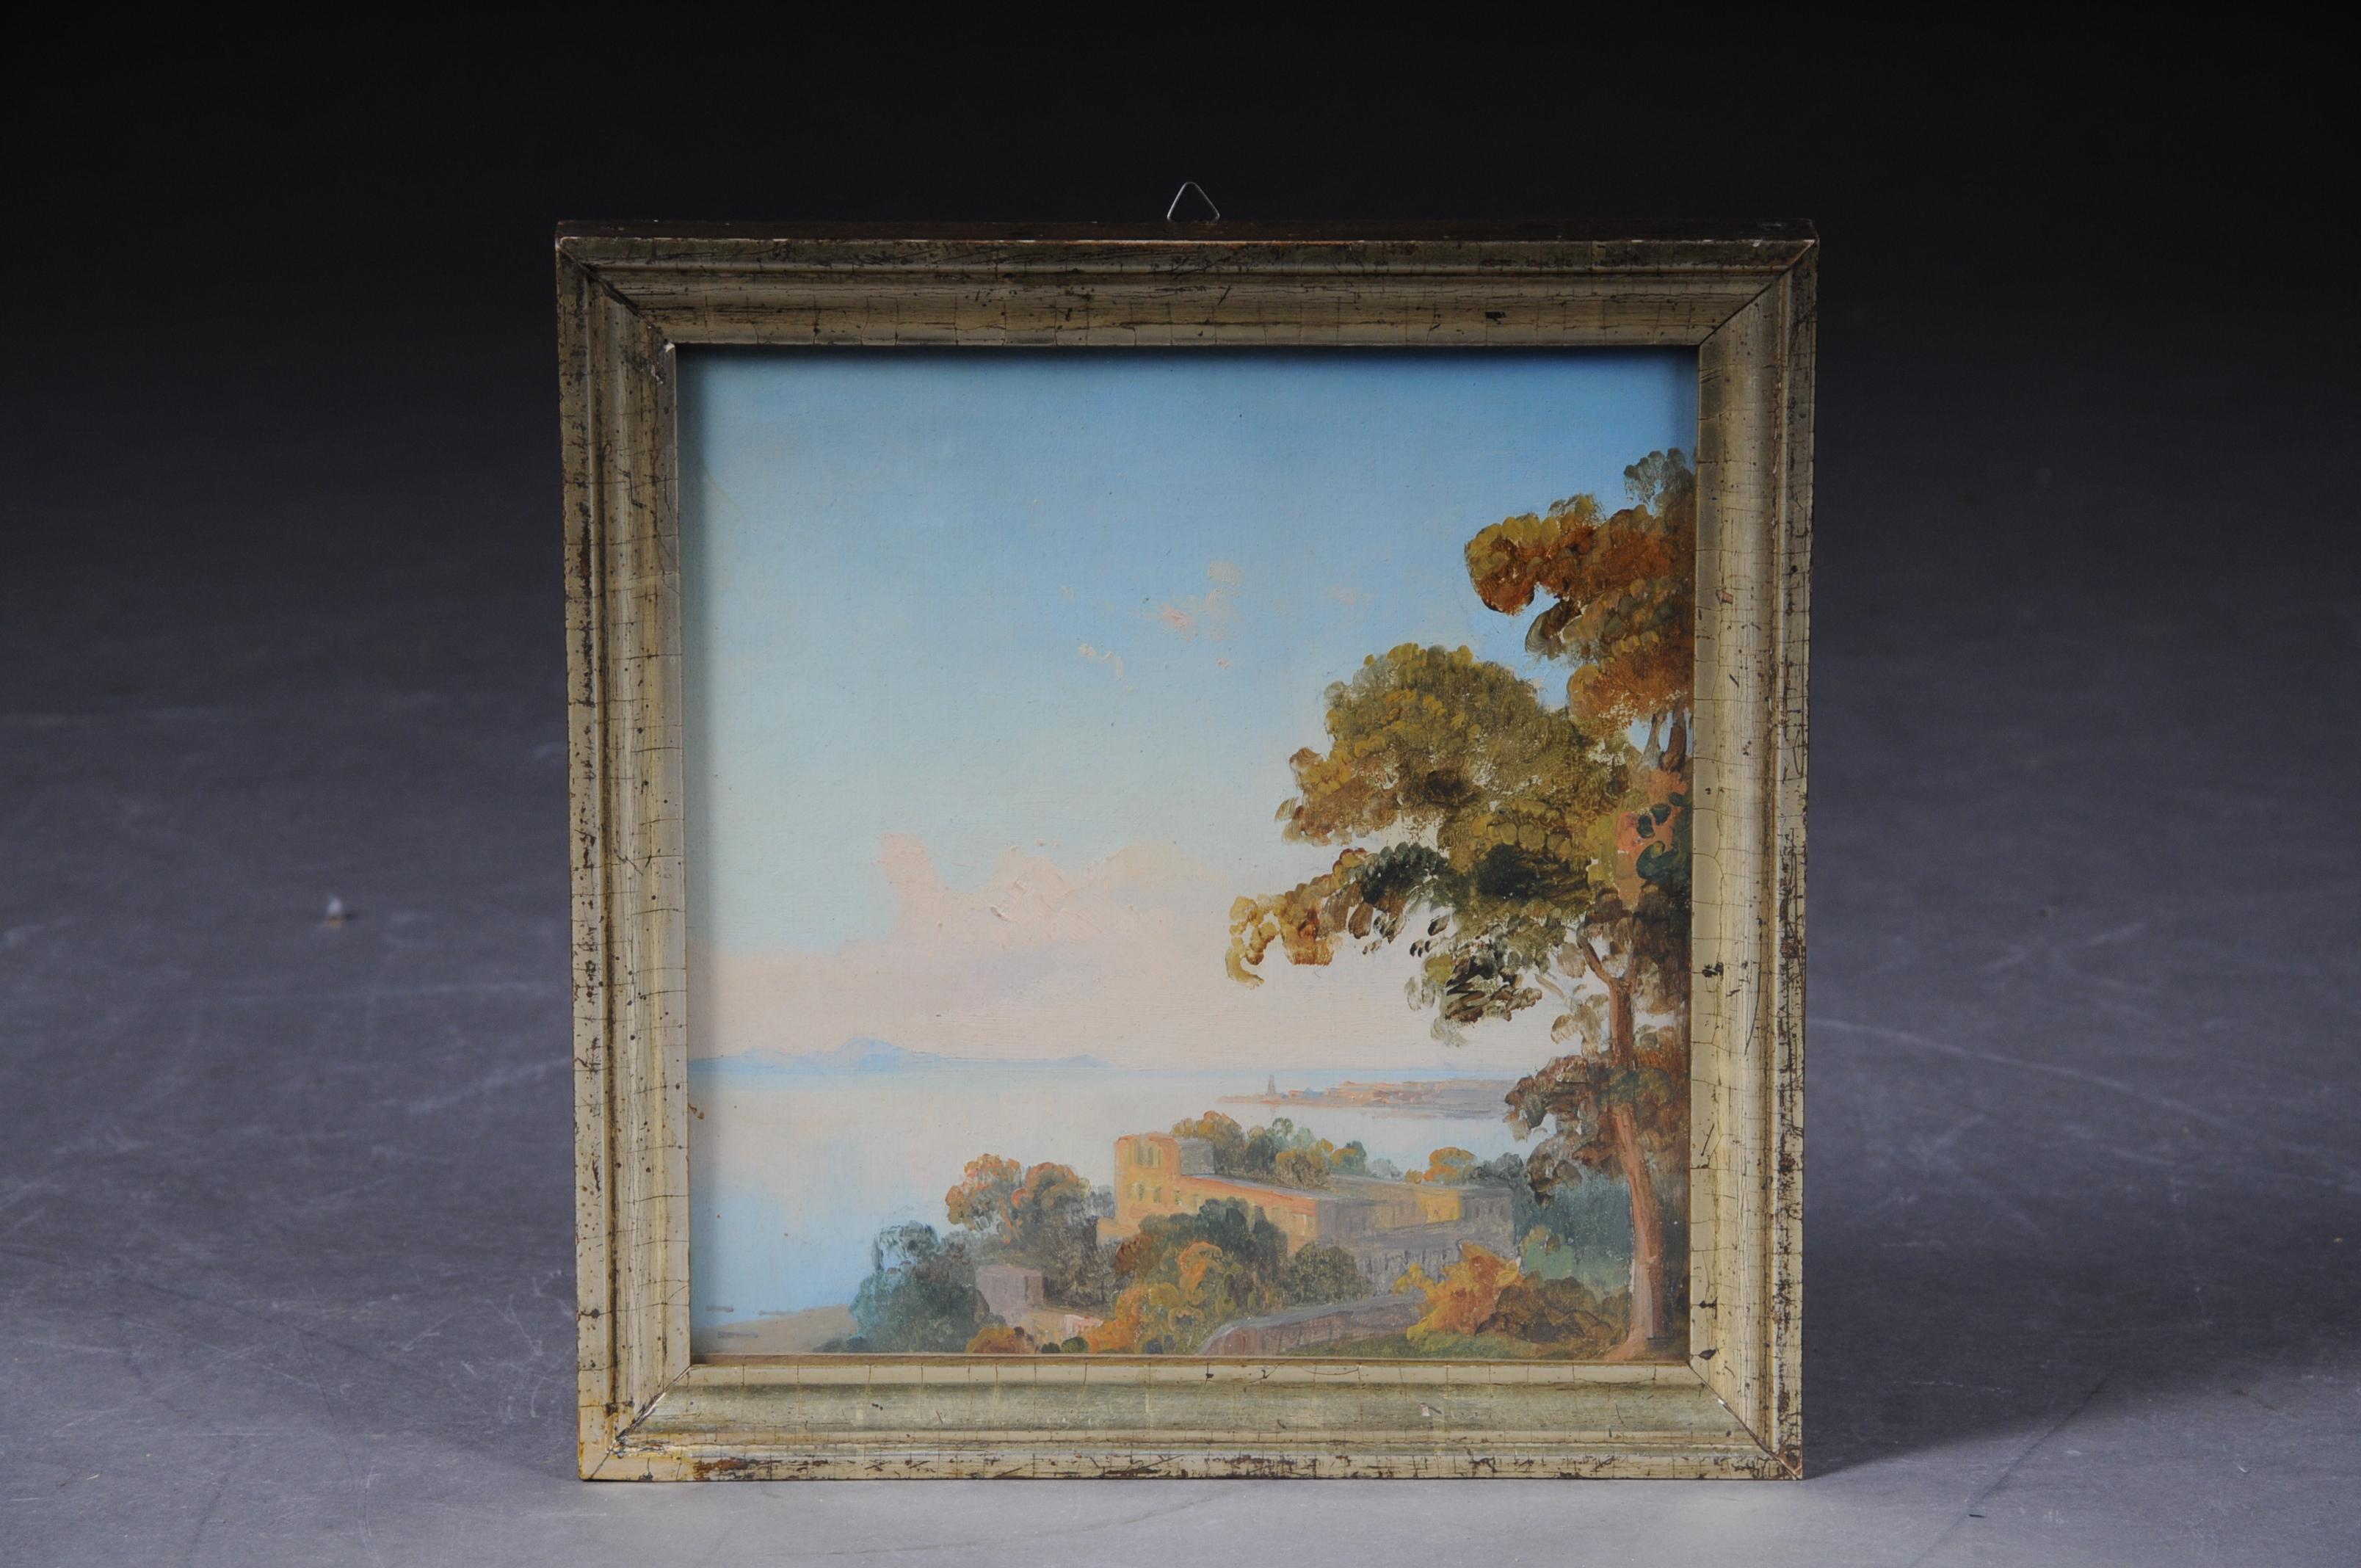 Belle peinture à l'huile paysage idyllique de Carl Gustav Wegener (1812-1887) Potsdam

Peinture de paysage charmante et colorée avec un ciel bleu lumineux. Cadre en bois doré vitré.